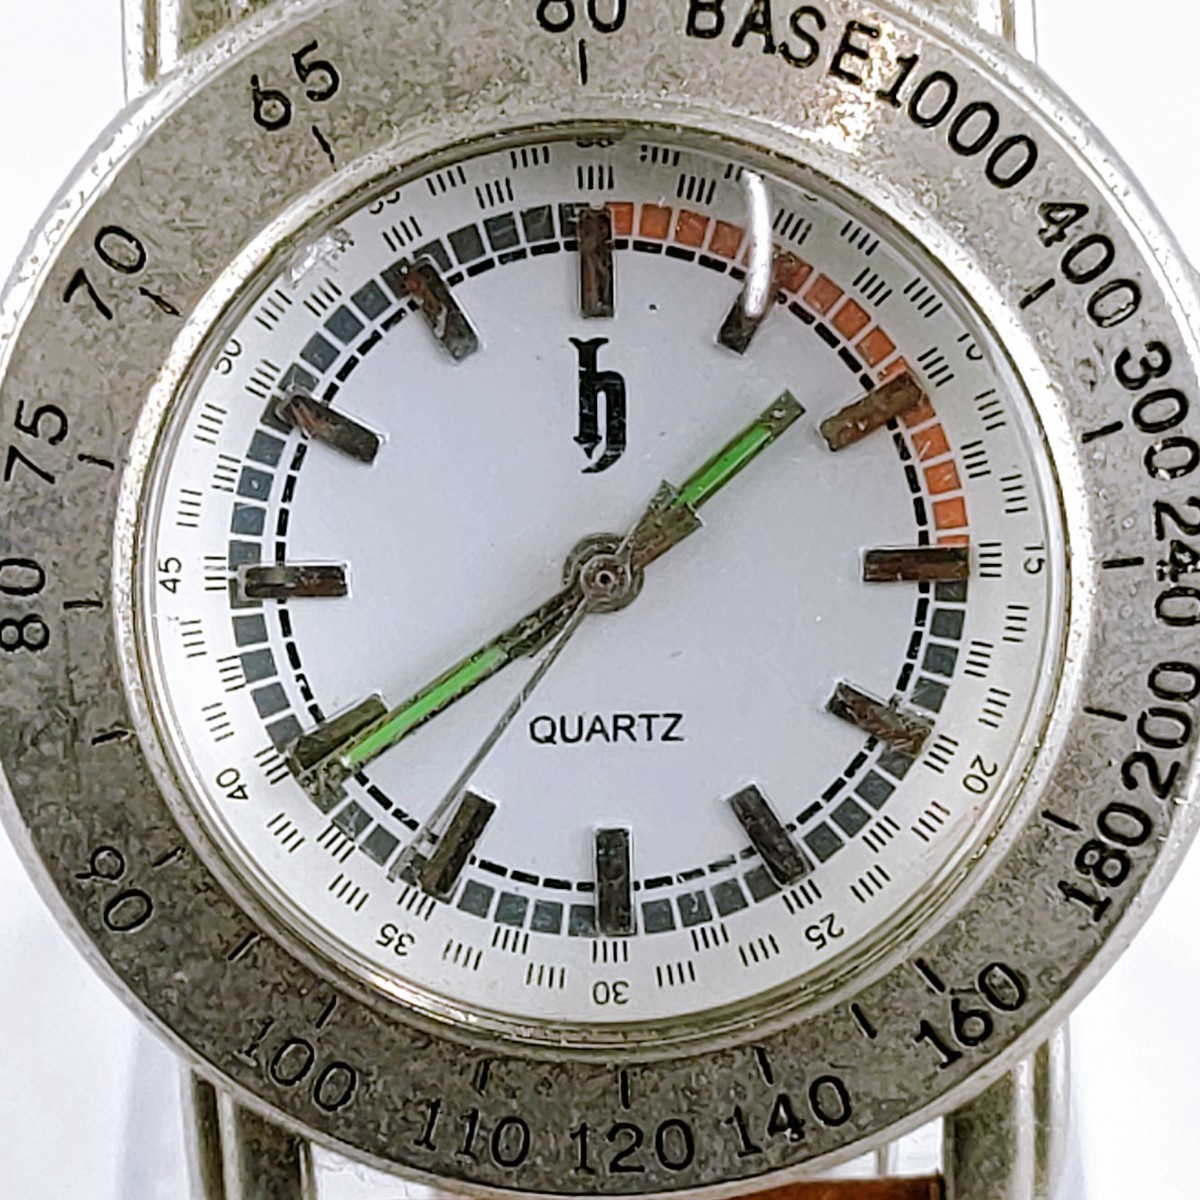  腕時計 クウォーツ アナログ 時計 ヴィンテージ 3針 白文字盤 h by shooter アクセ アクセサリー アンティーク レトロ_画像2